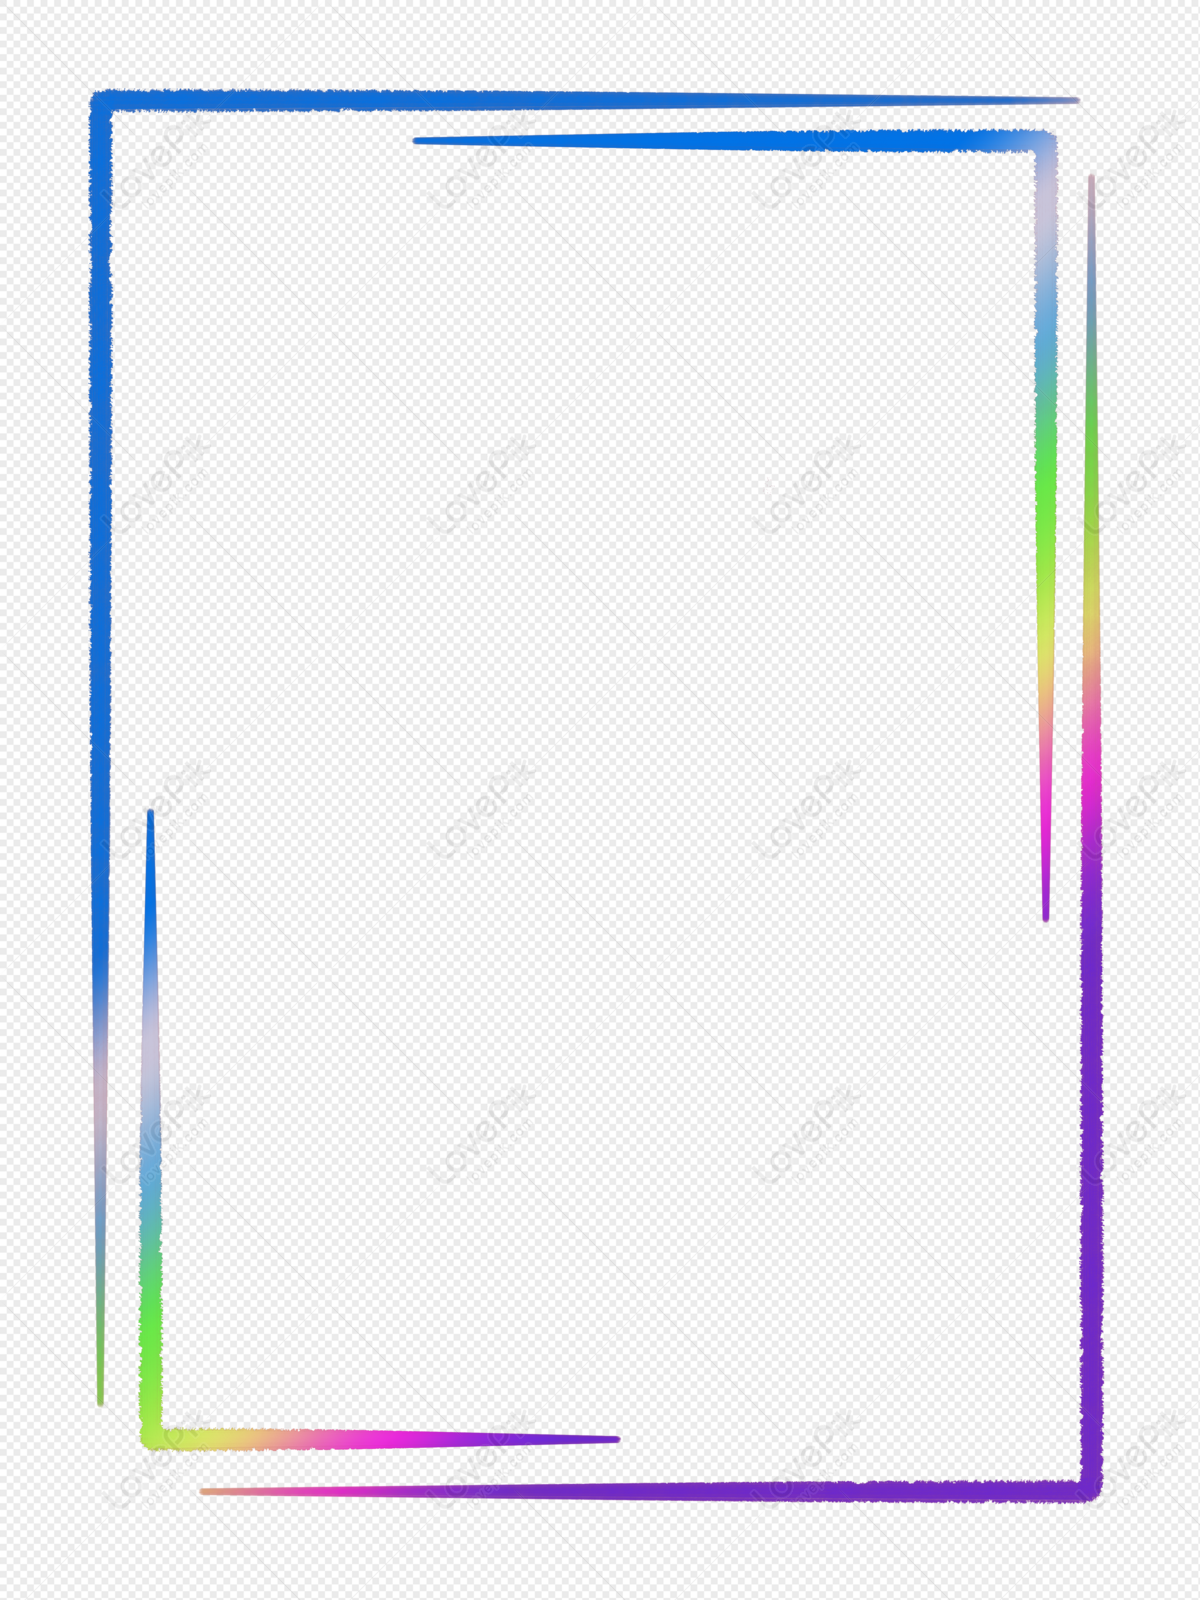 Colorful Border Line Design